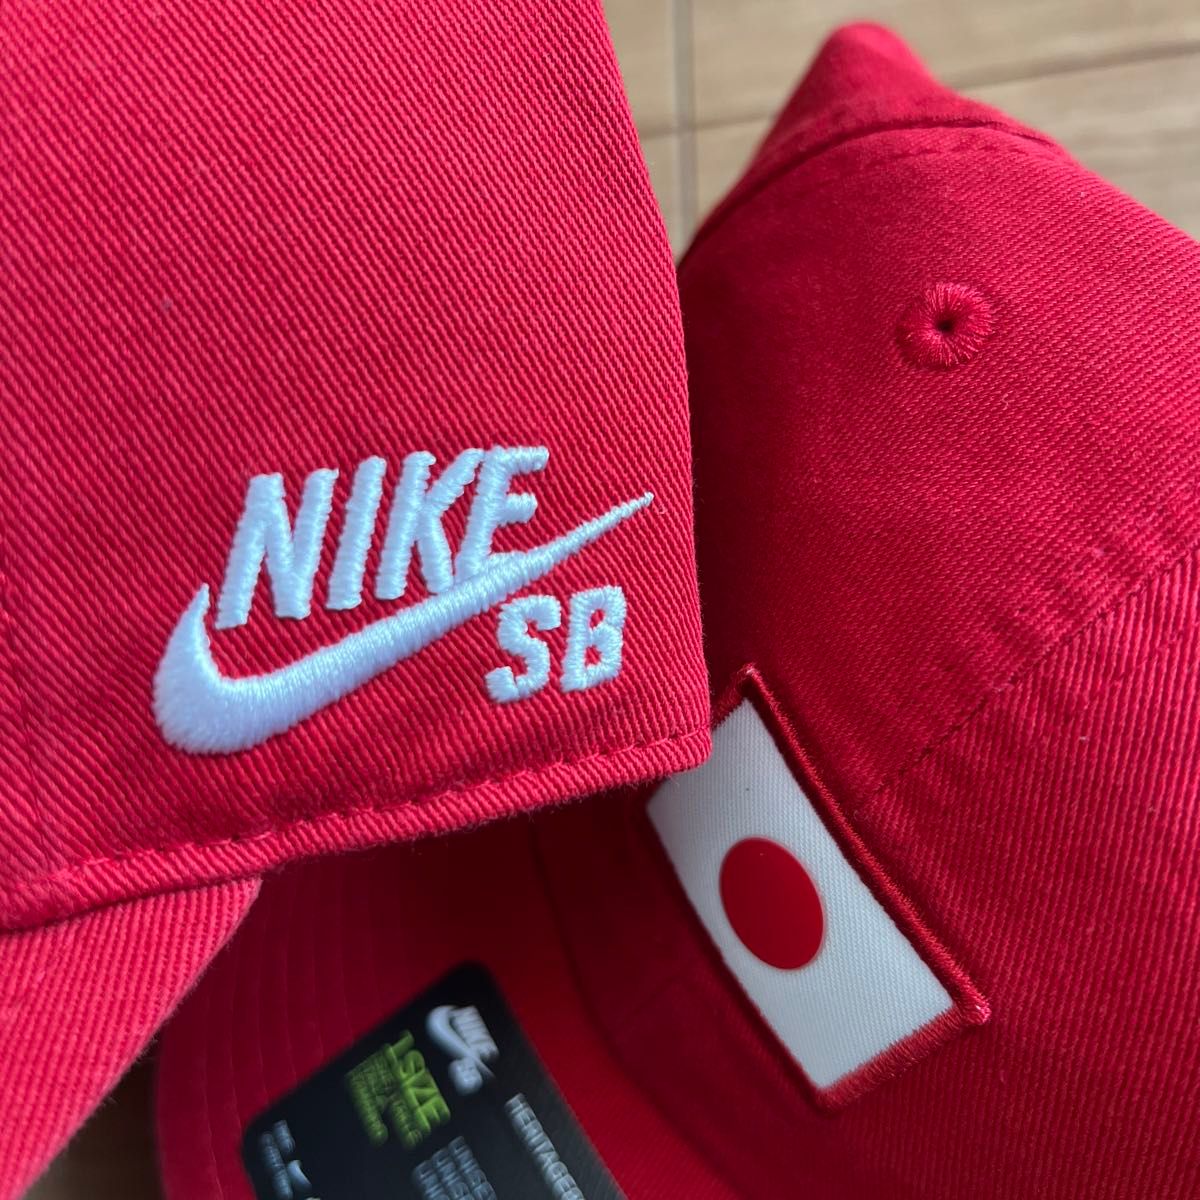 NIKE SB  キャップ 新品 2個セット 帽子 ナイキ SB 東京オリンピック 日本代表モデル